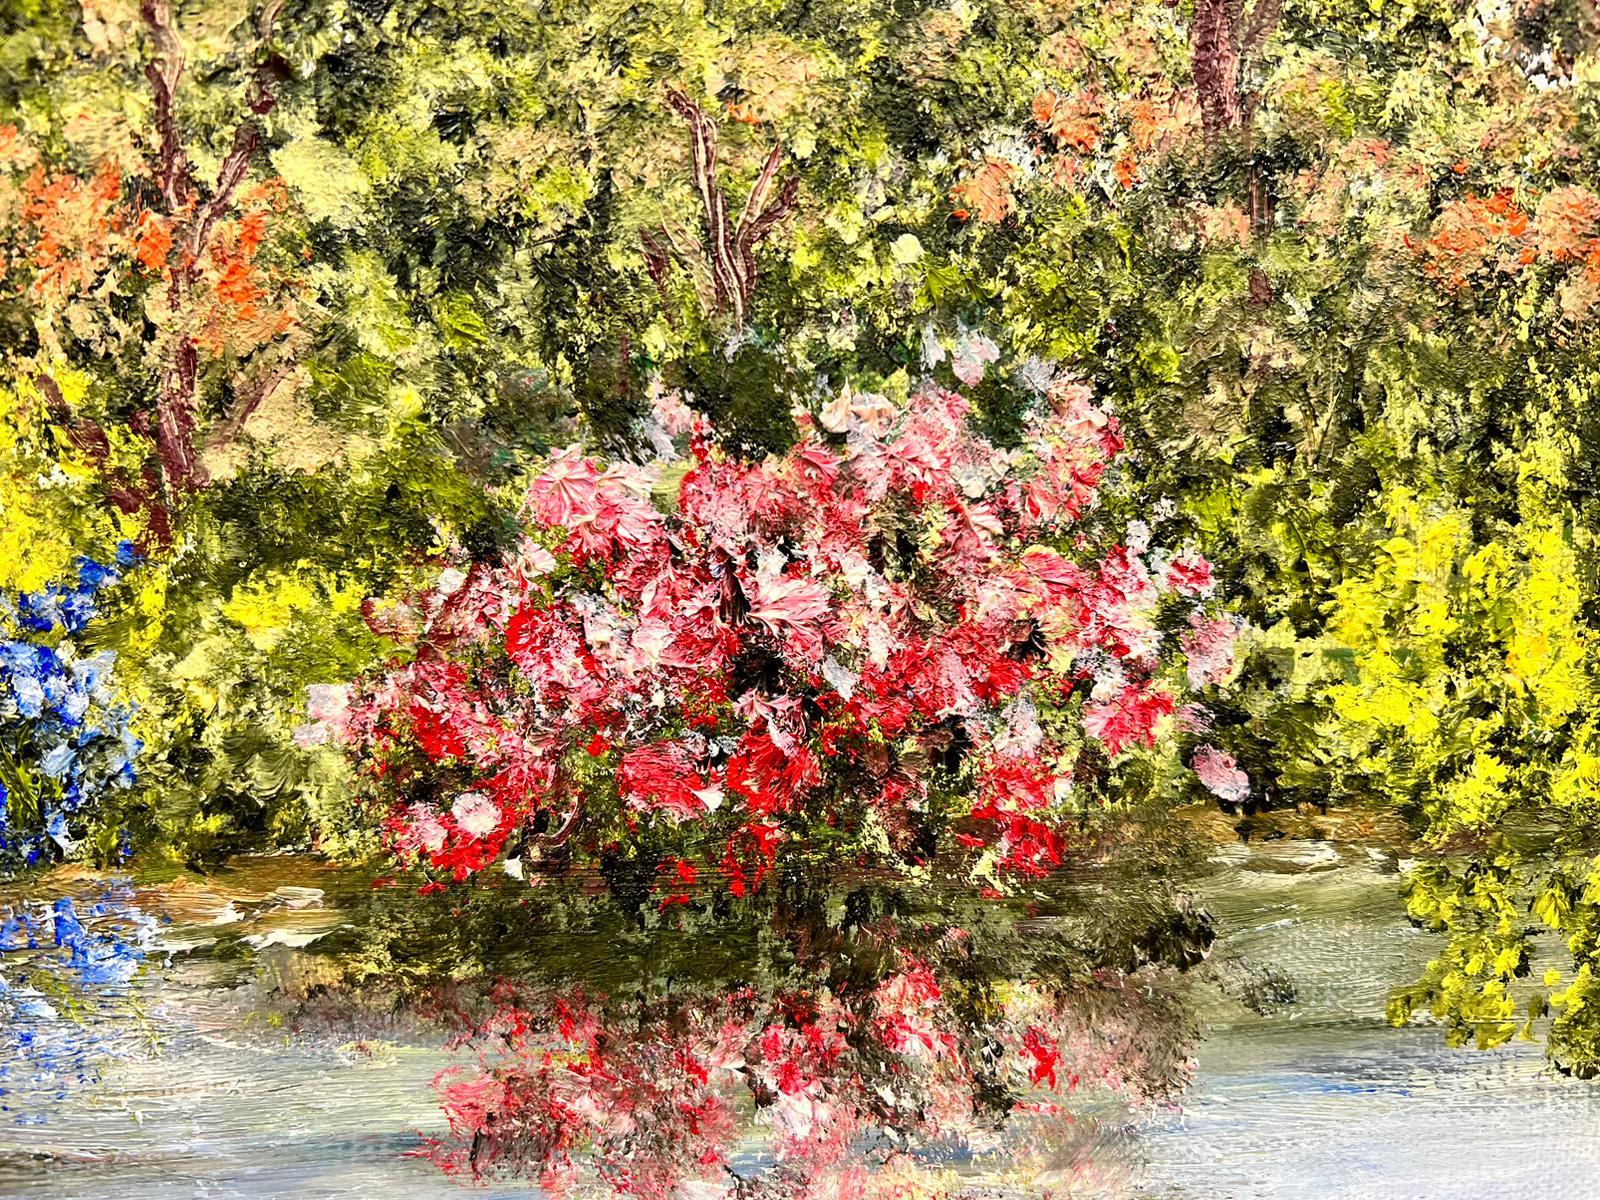 Peinture à l'huile impressionniste française signée Waterlily Pond, Giverny Monet's Gardens - Impressionnisme Painting par 20th Century French School